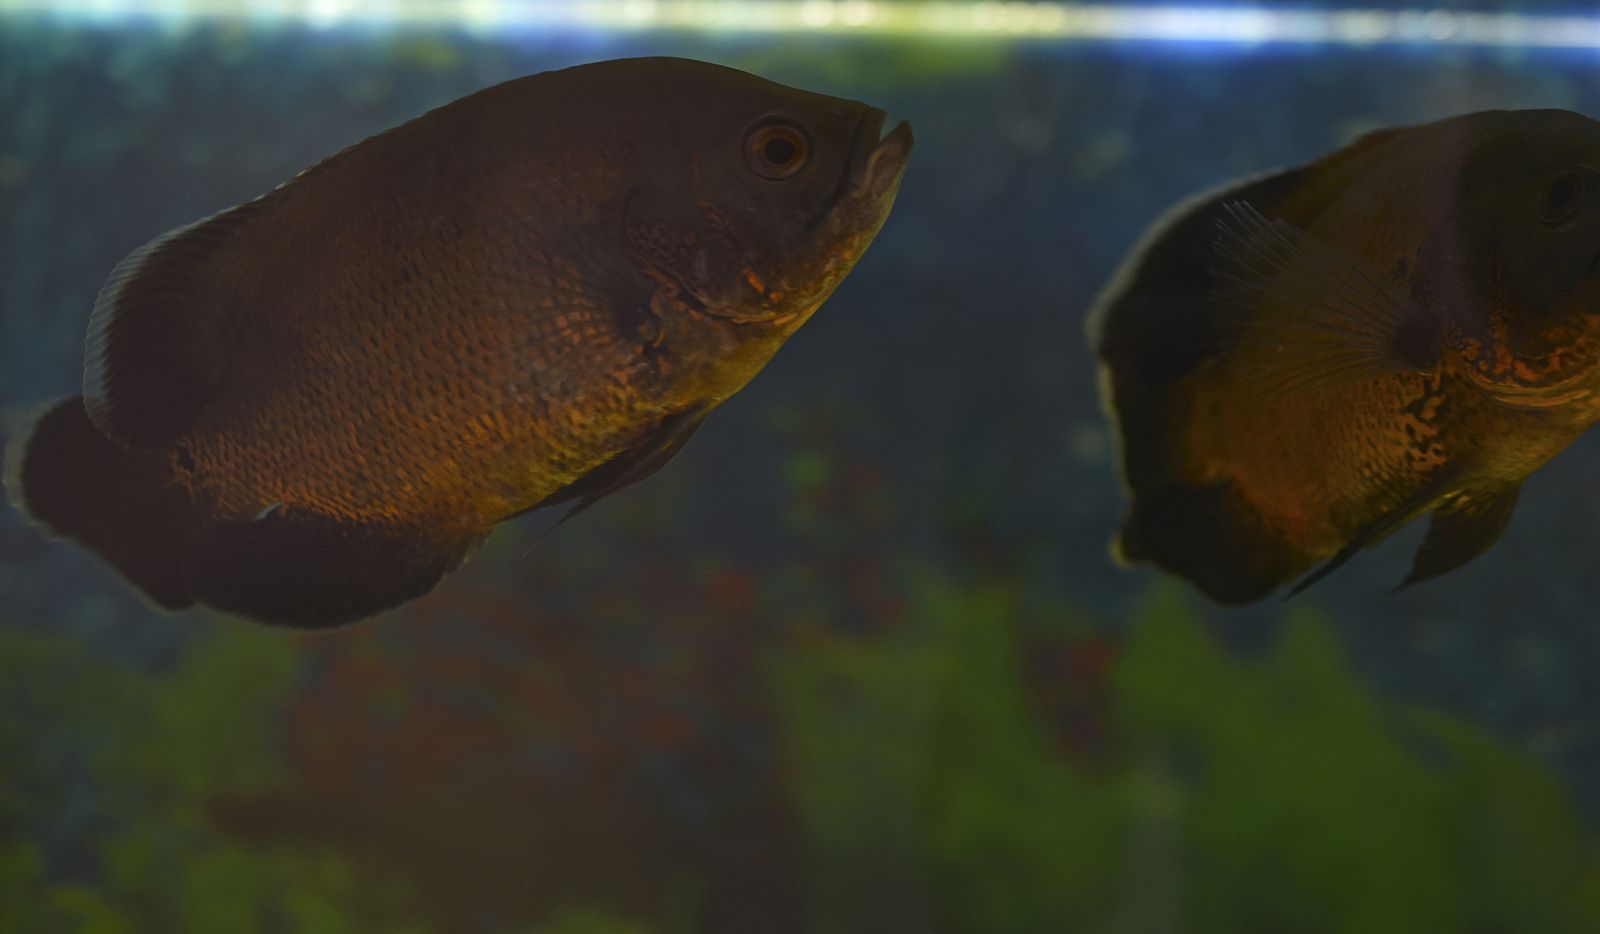 El tesoro escondido sobre la longevidad: descubren tres especies de peces que viven más de 100 años